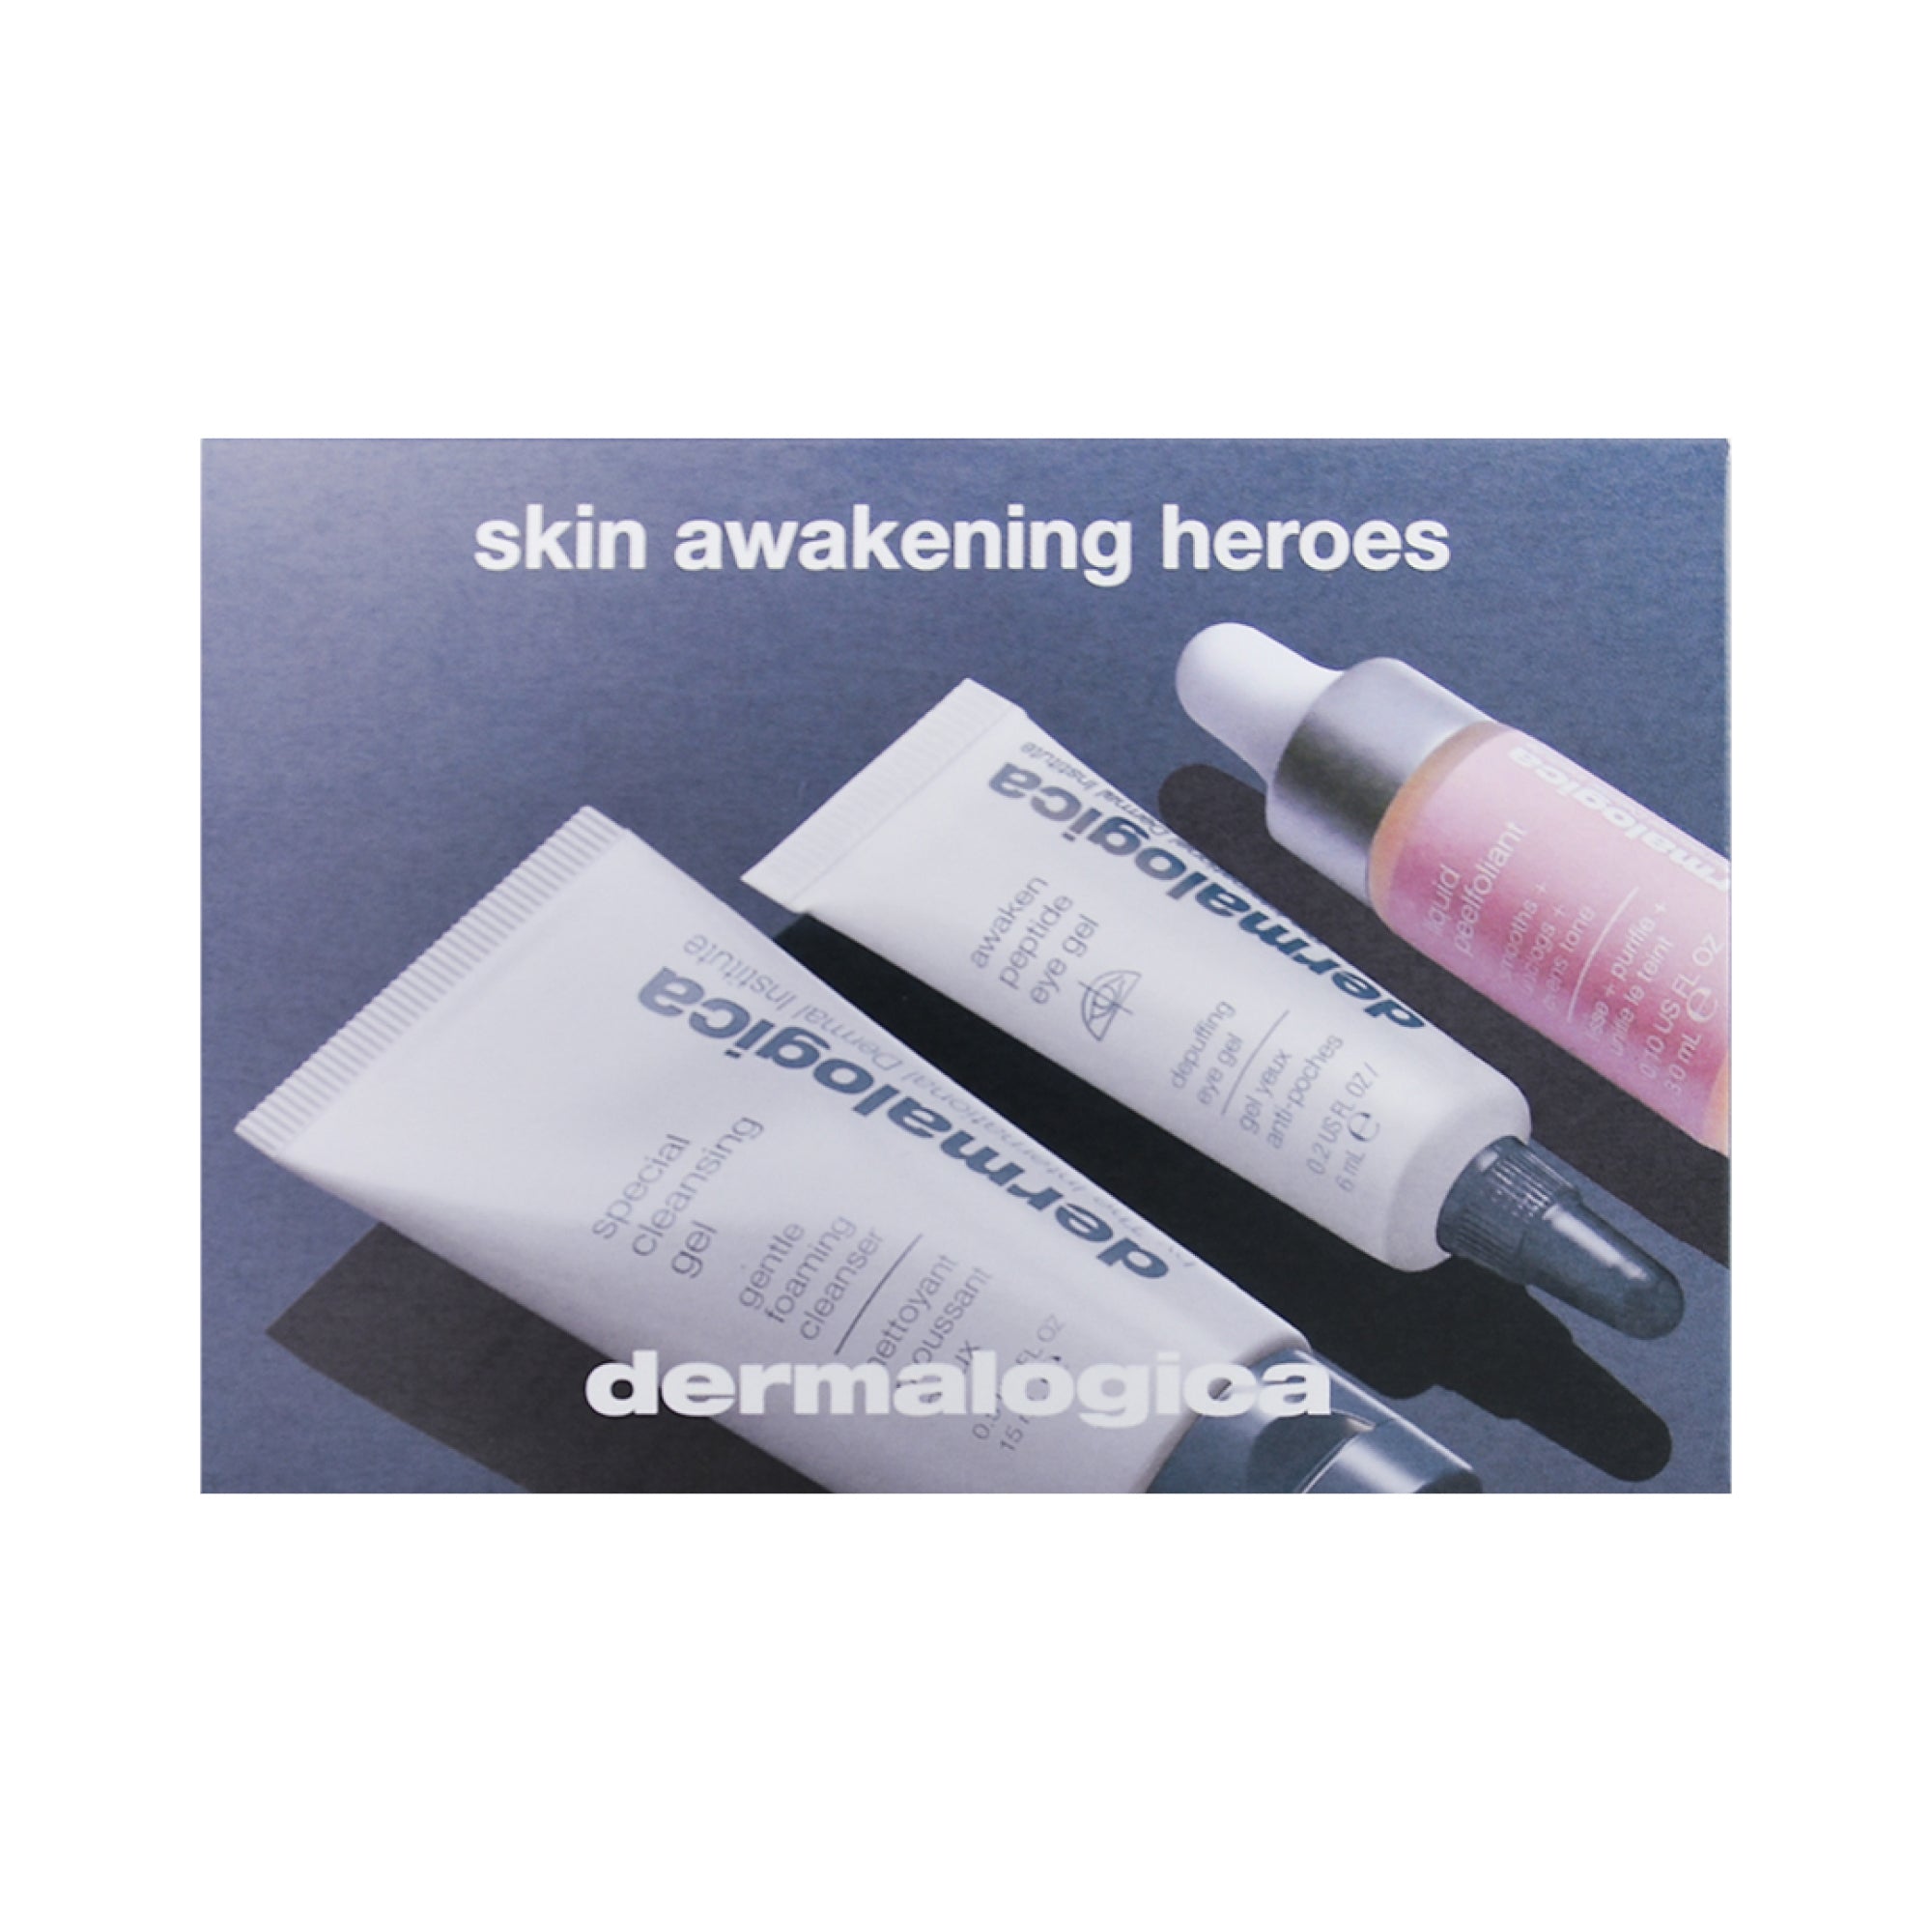 FREE GIFT - Skin Awakening Heroes Kit